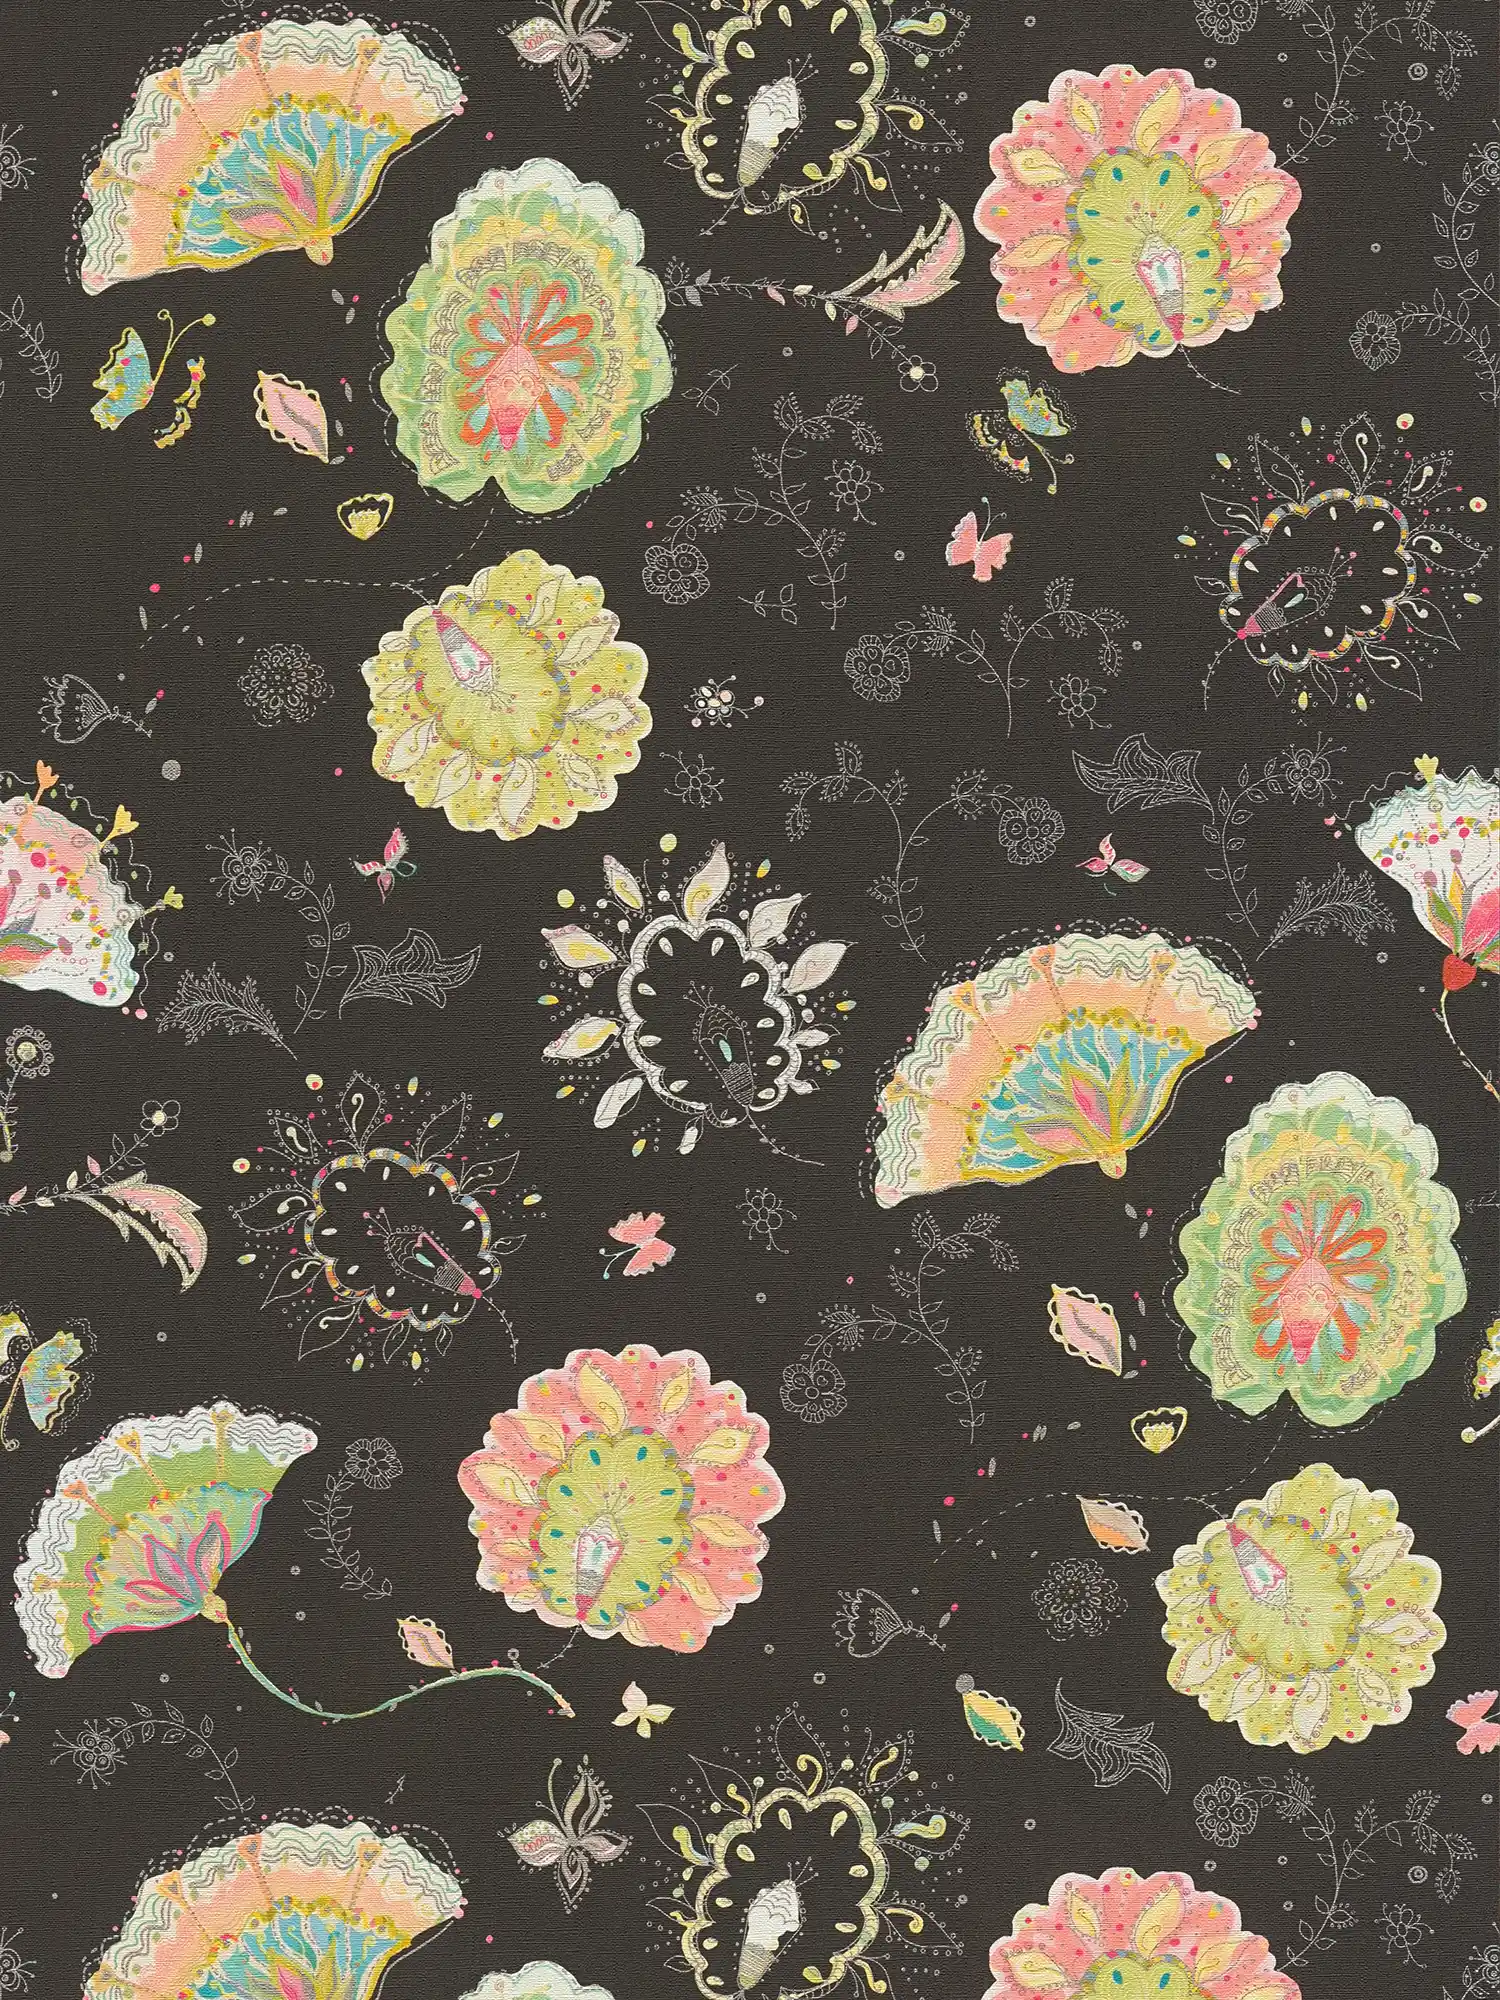 Vliestapete mit floralem Muster und leichter Glanzstruktur – Schwarz, Grün, Bunt
